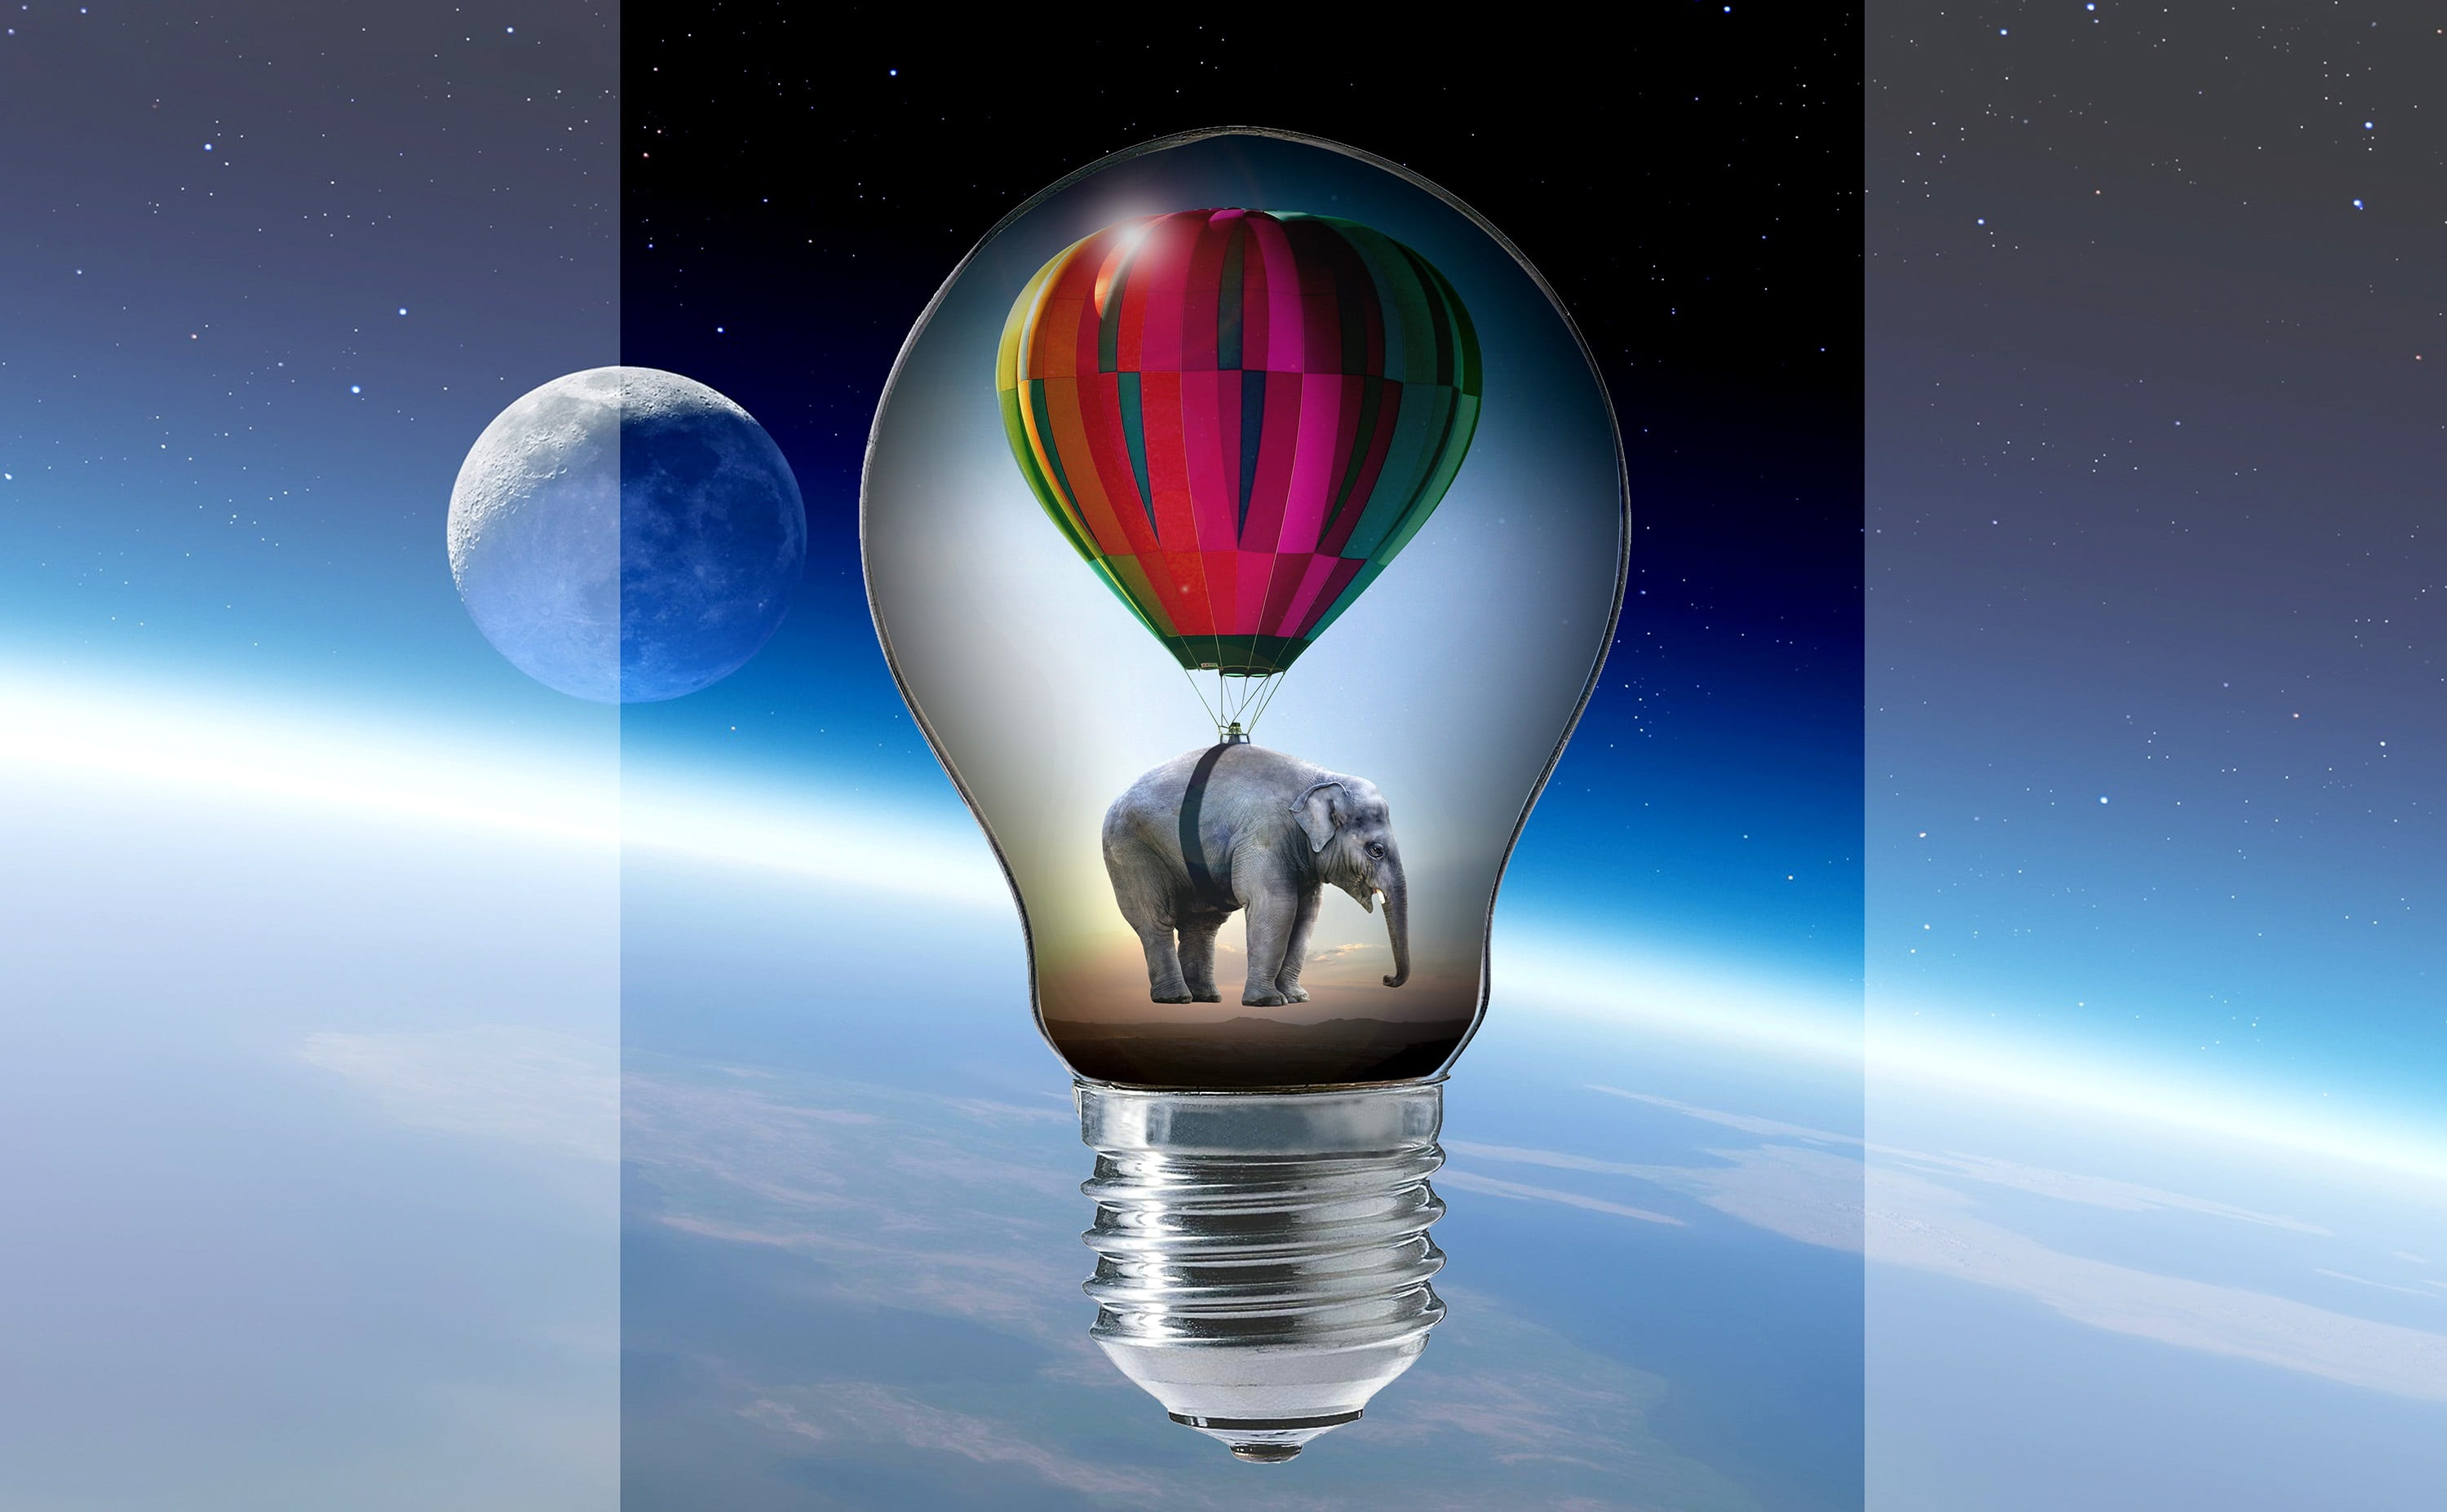 elephant with hot hair balloon bulb artwork, pear, light bulb